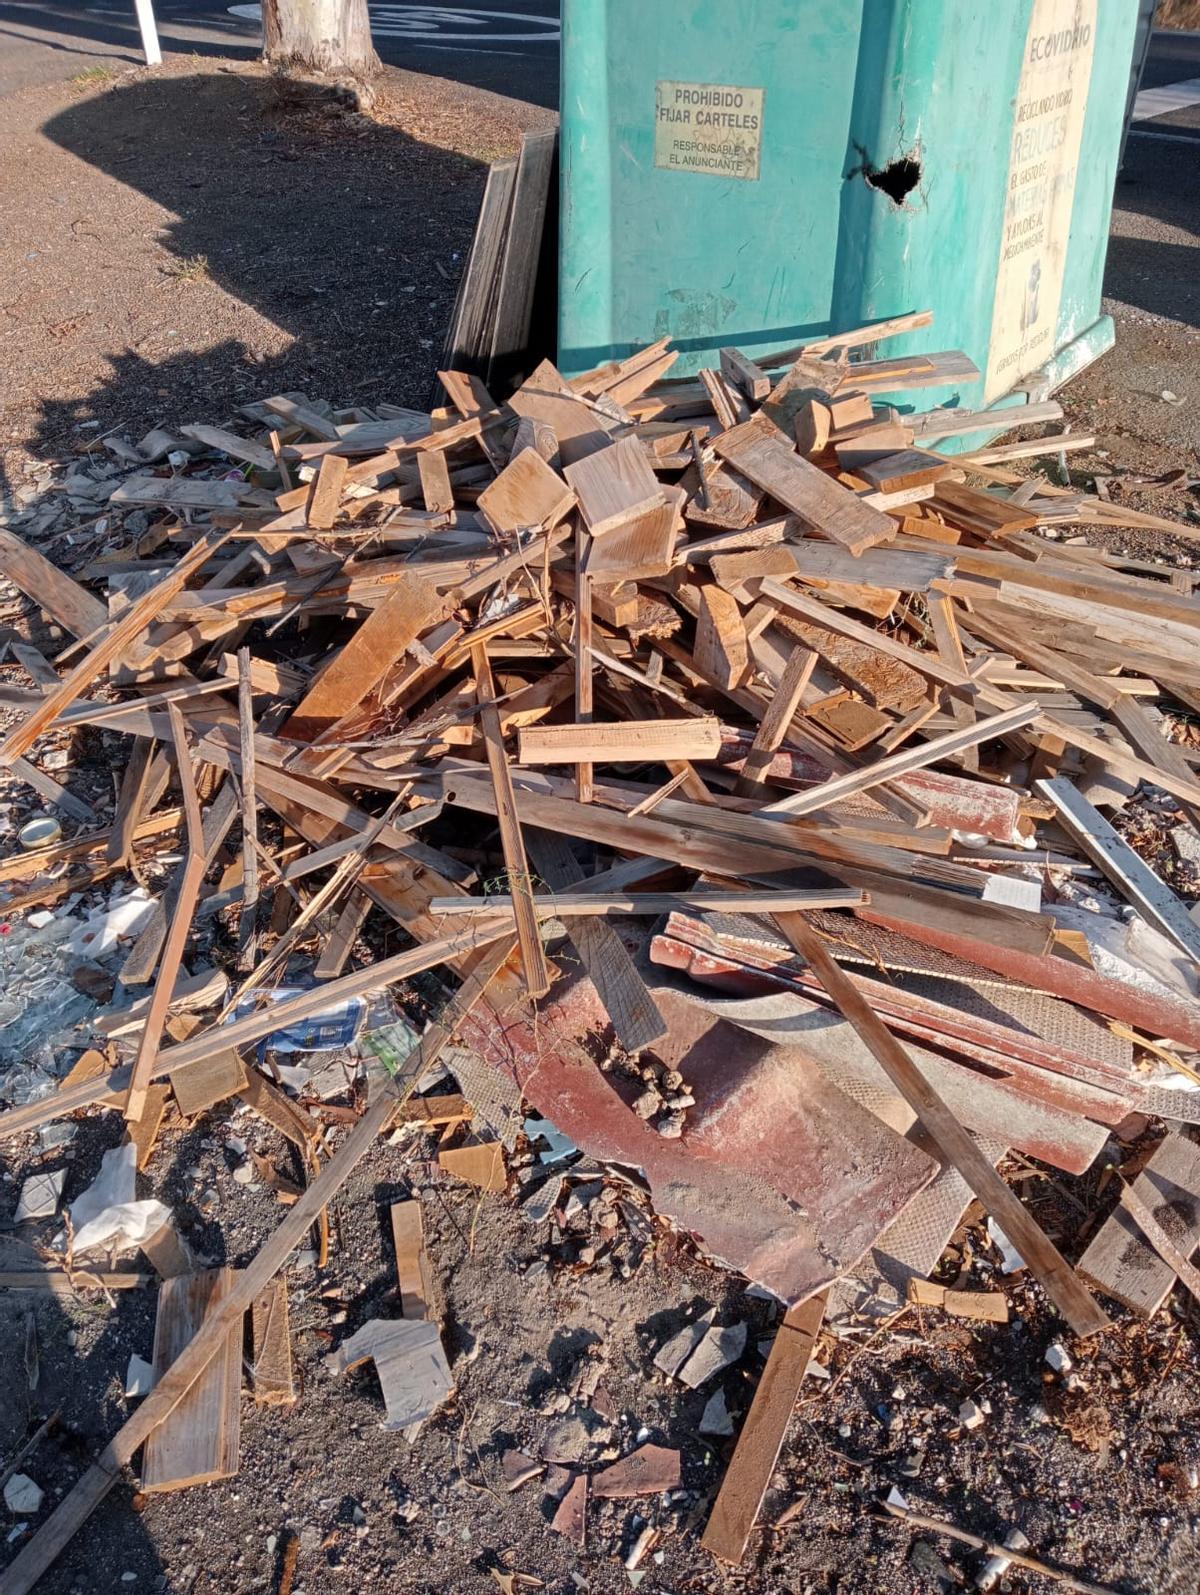 Basura y escombros depositados en diferentes zonas del municipio de Telde